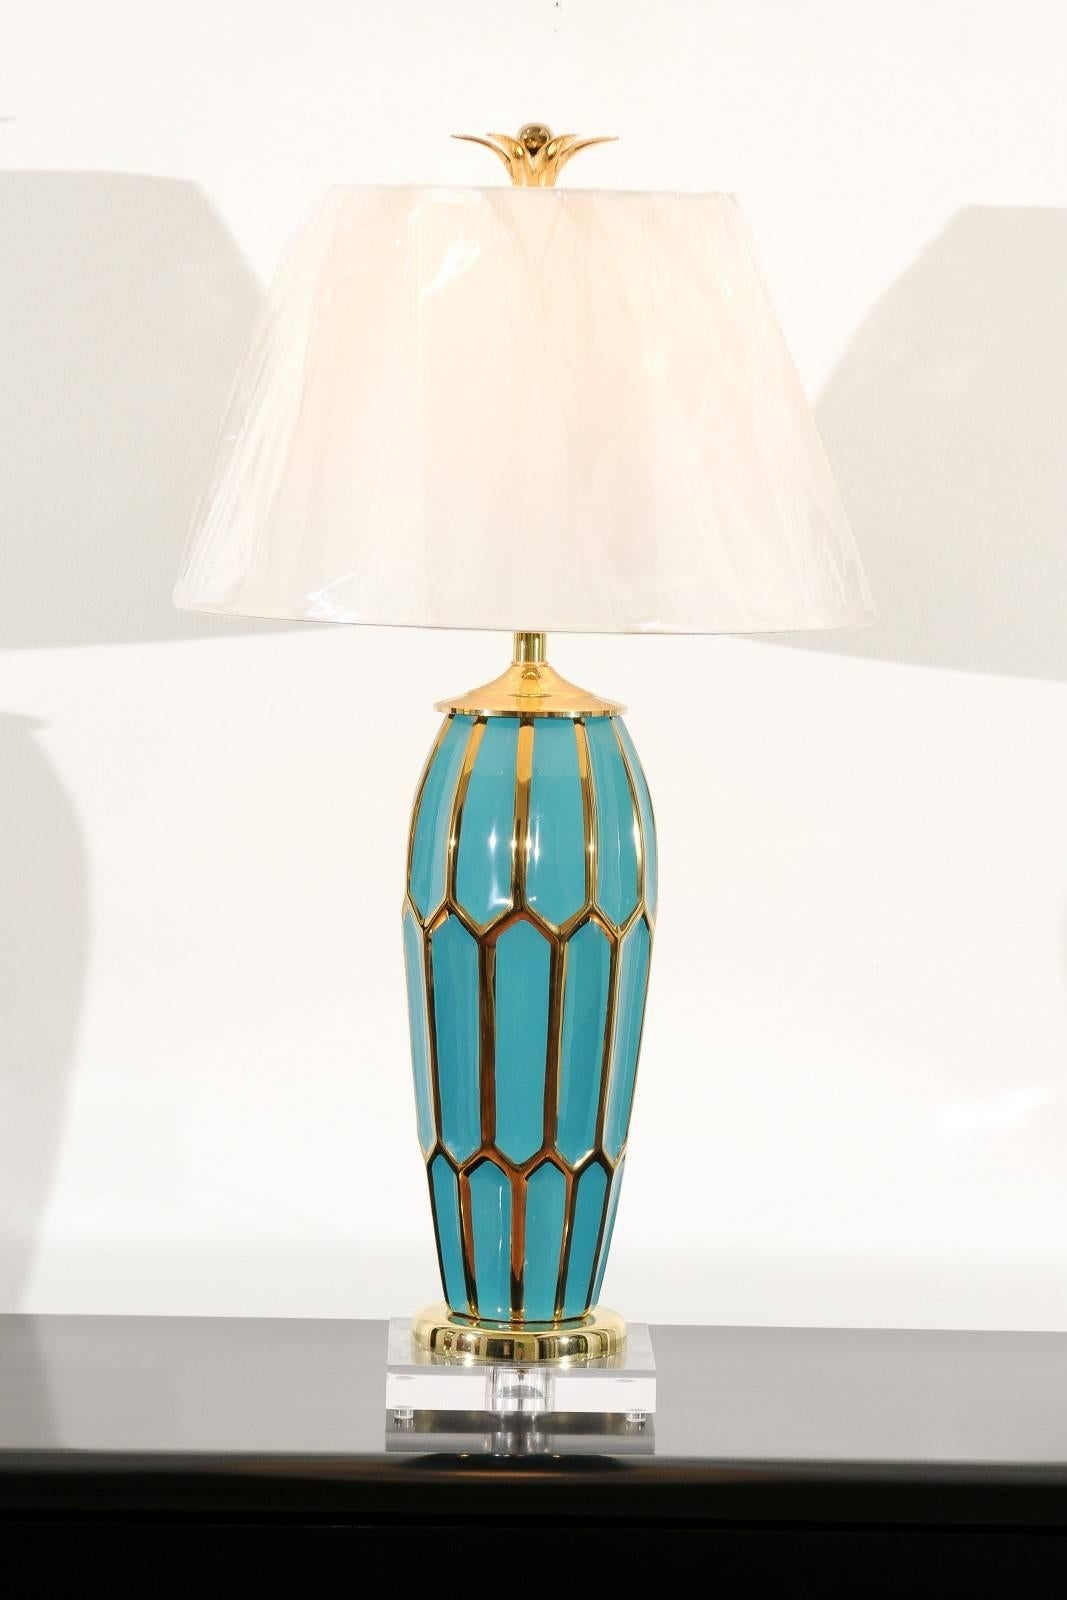 Une étonnante paire de récipients en céramique utilisés comme lampes sur mesure. Belle forme en turquoise avec des motifs géométriques rehaussés d'or. Accents en Lucite et en laiton massif. Des pétales et des boules en laiton fabriquées sur mesure